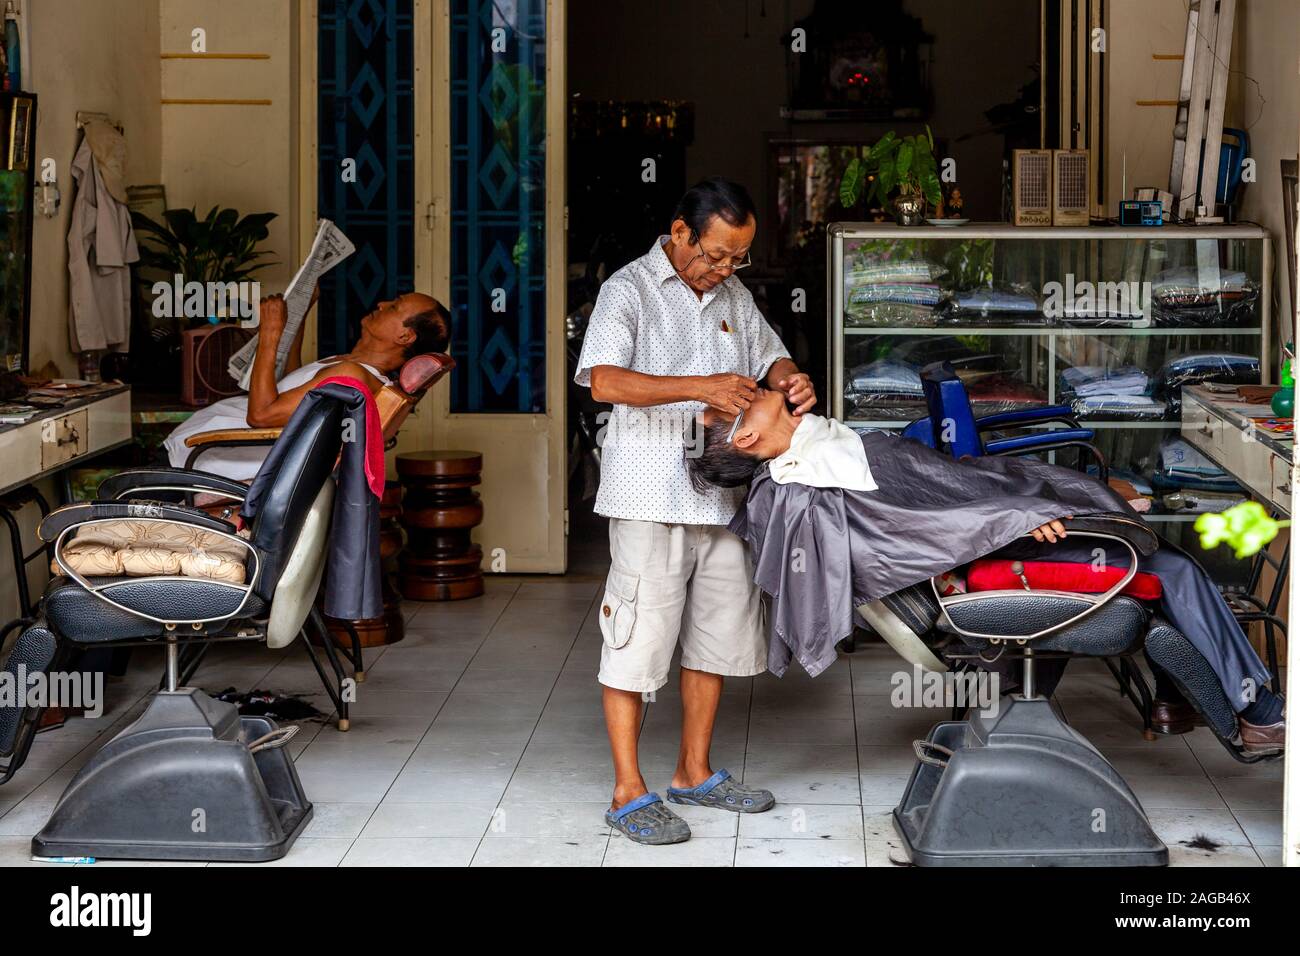 Un homme d'avoir un rasage humide dans une boutique de coiffeur, Phnom Penh, Cambodge. Banque D'Images